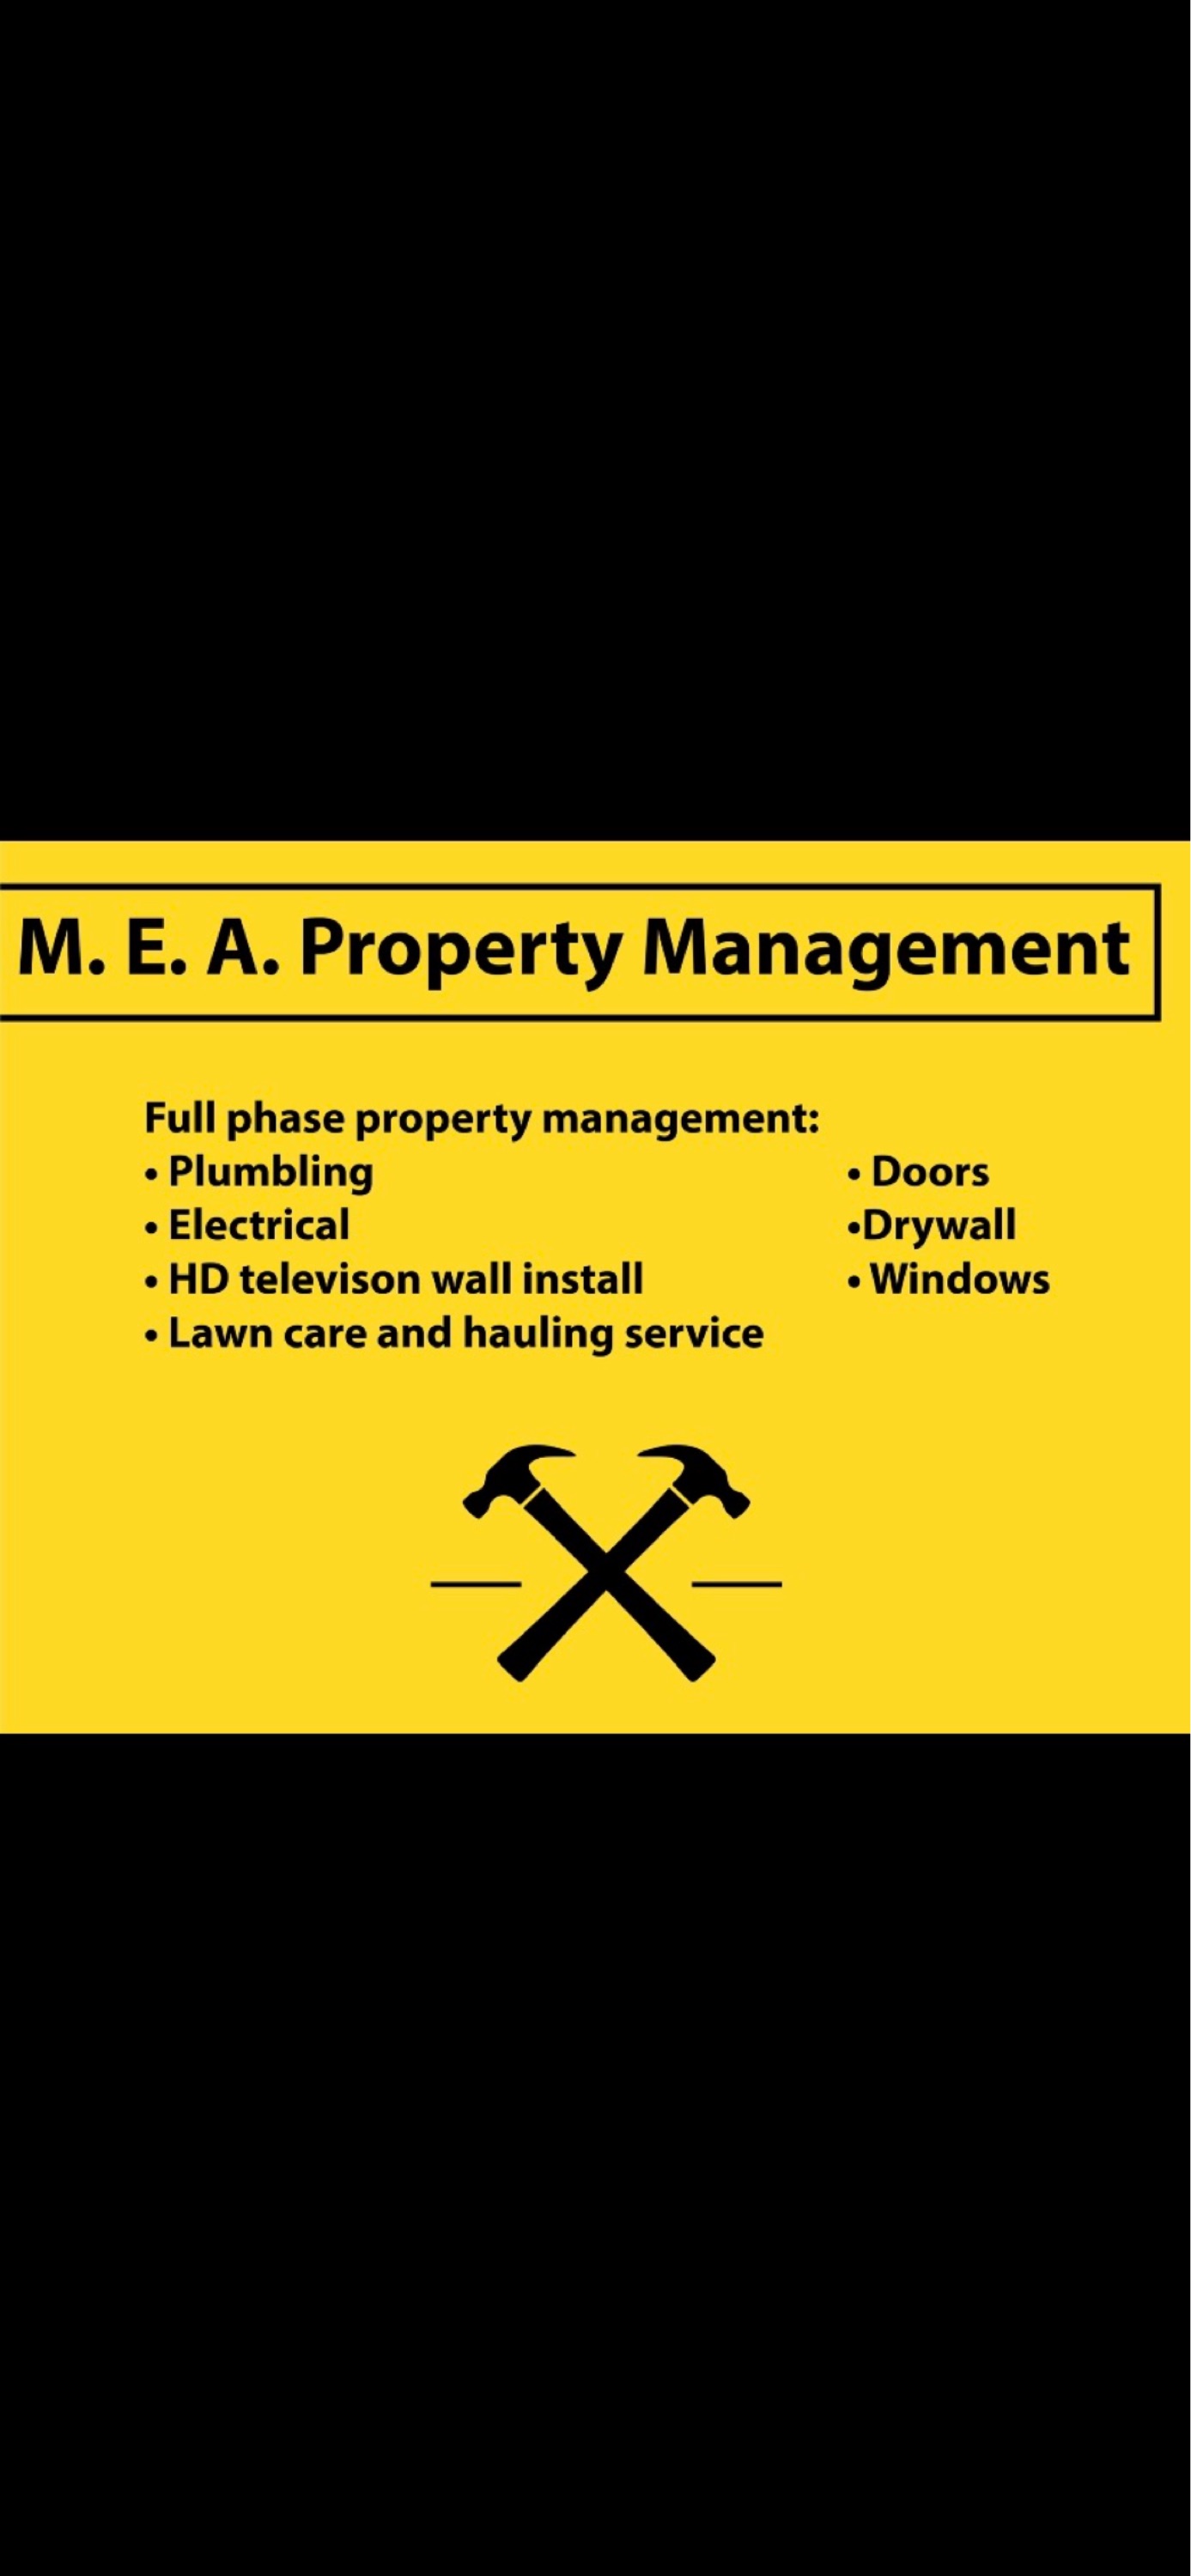 M.E.A Property Management Services Logo